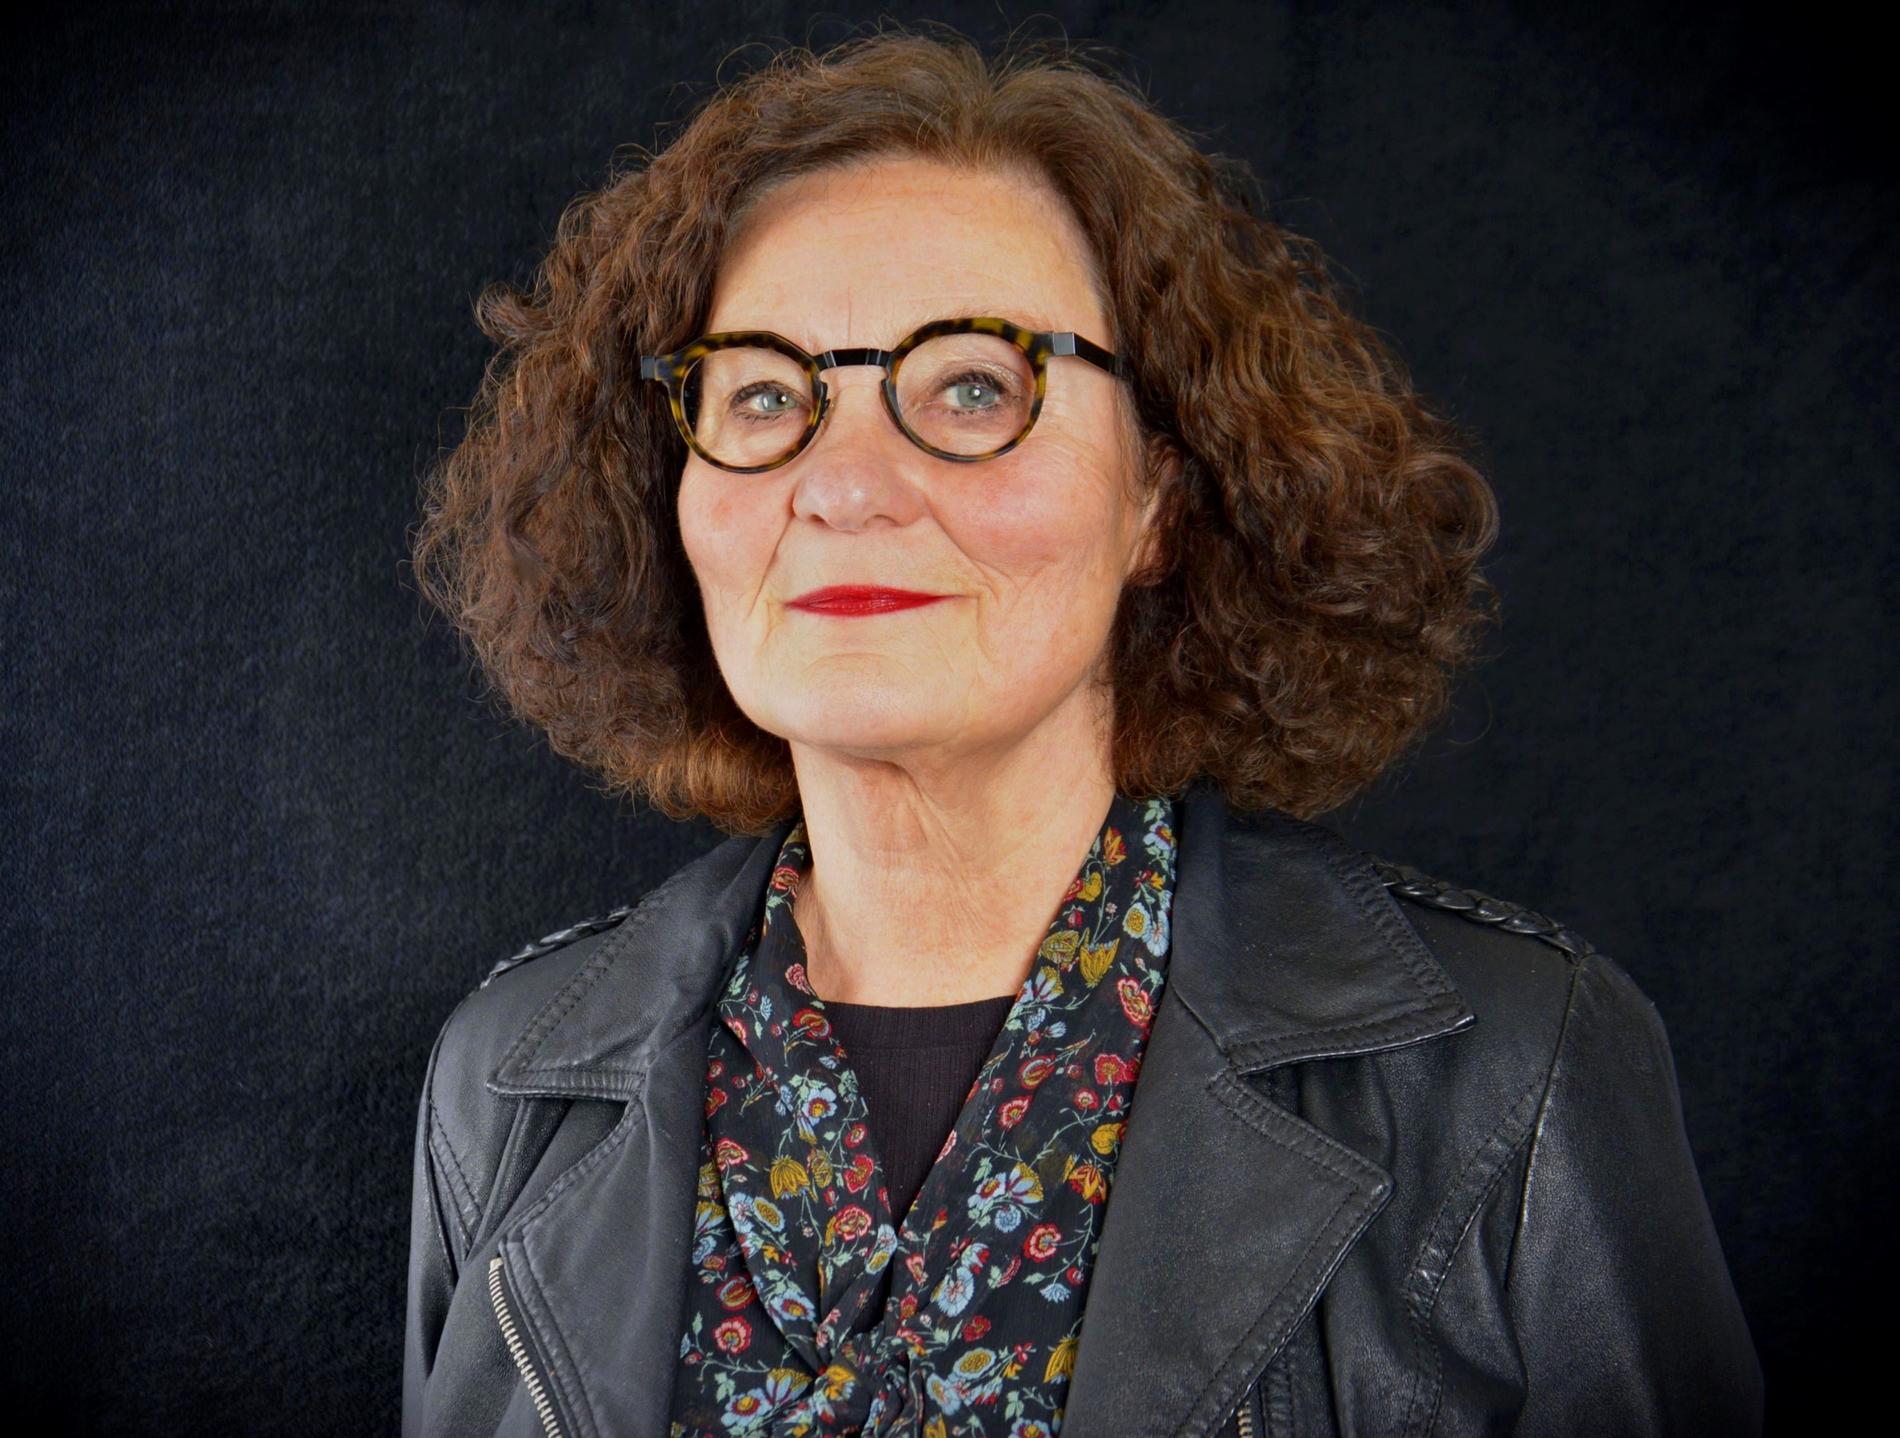 Ebba Witt Brattström är litteraturprofessor. Hon disputerade 1988 på avhandlingen ”Moa Martinson: skrift och drift i trettiotalet”.